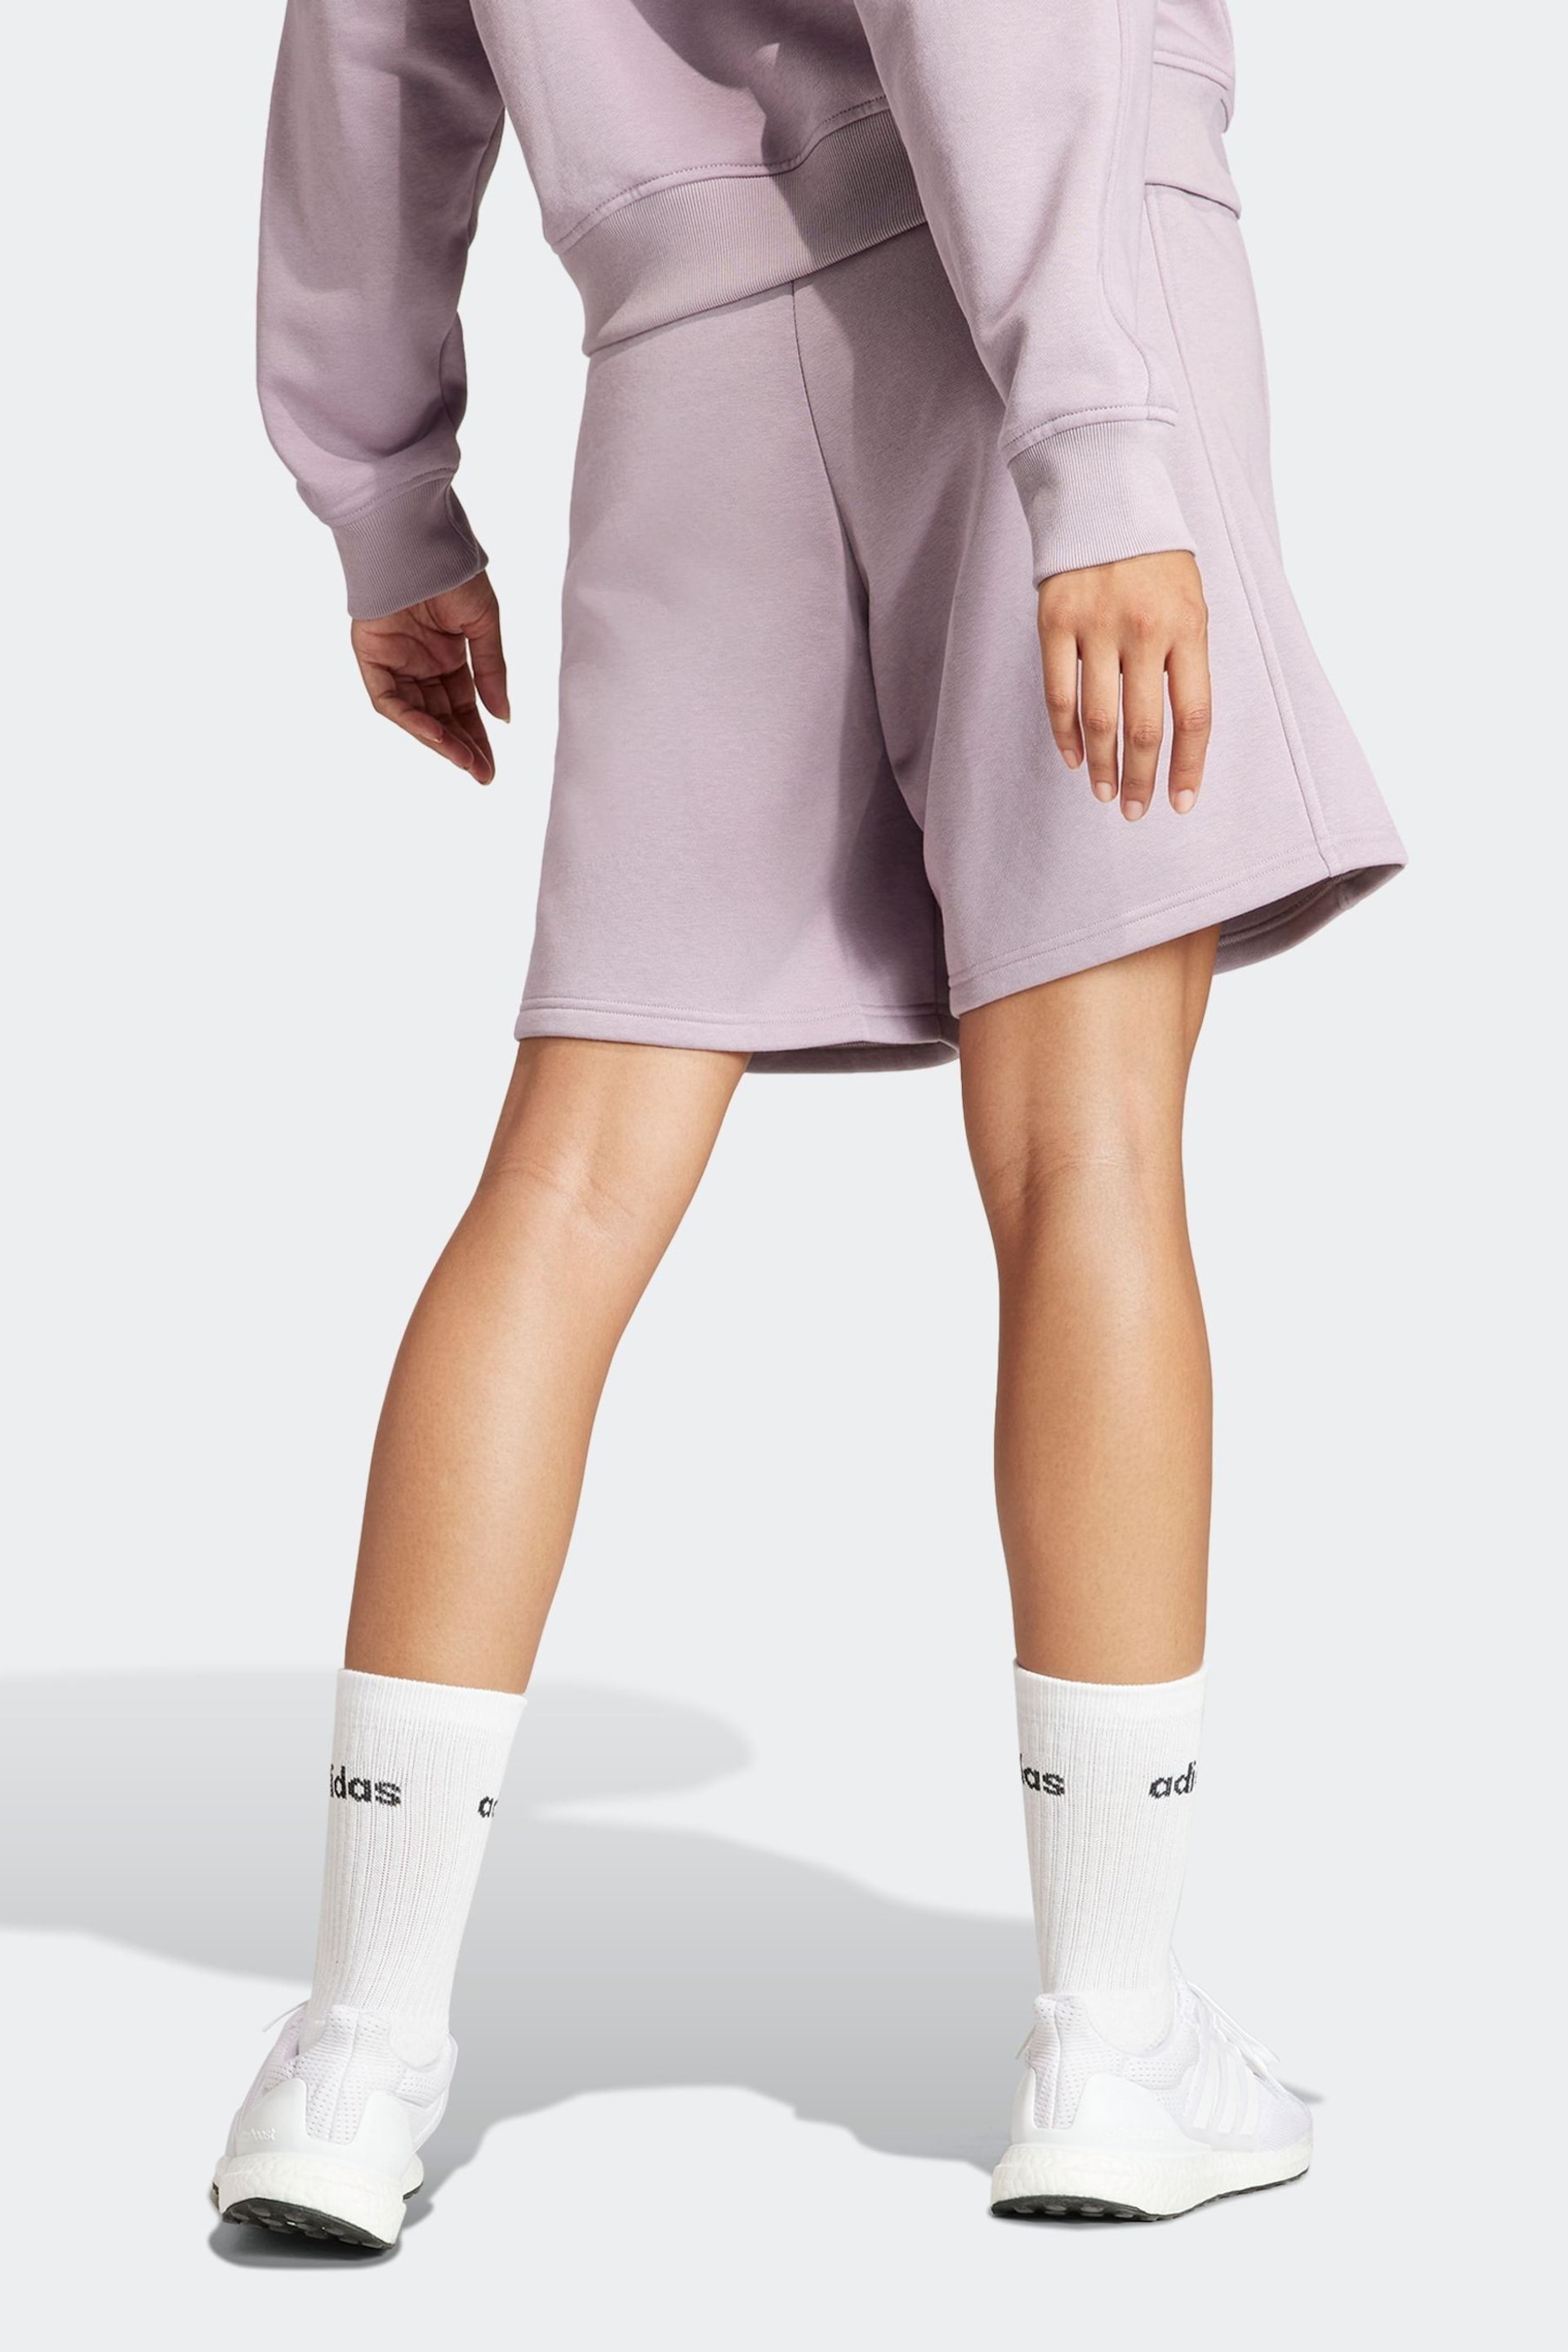 adidas Purple Sportswear All Szn Fleece Shorts - Image 2 of 6